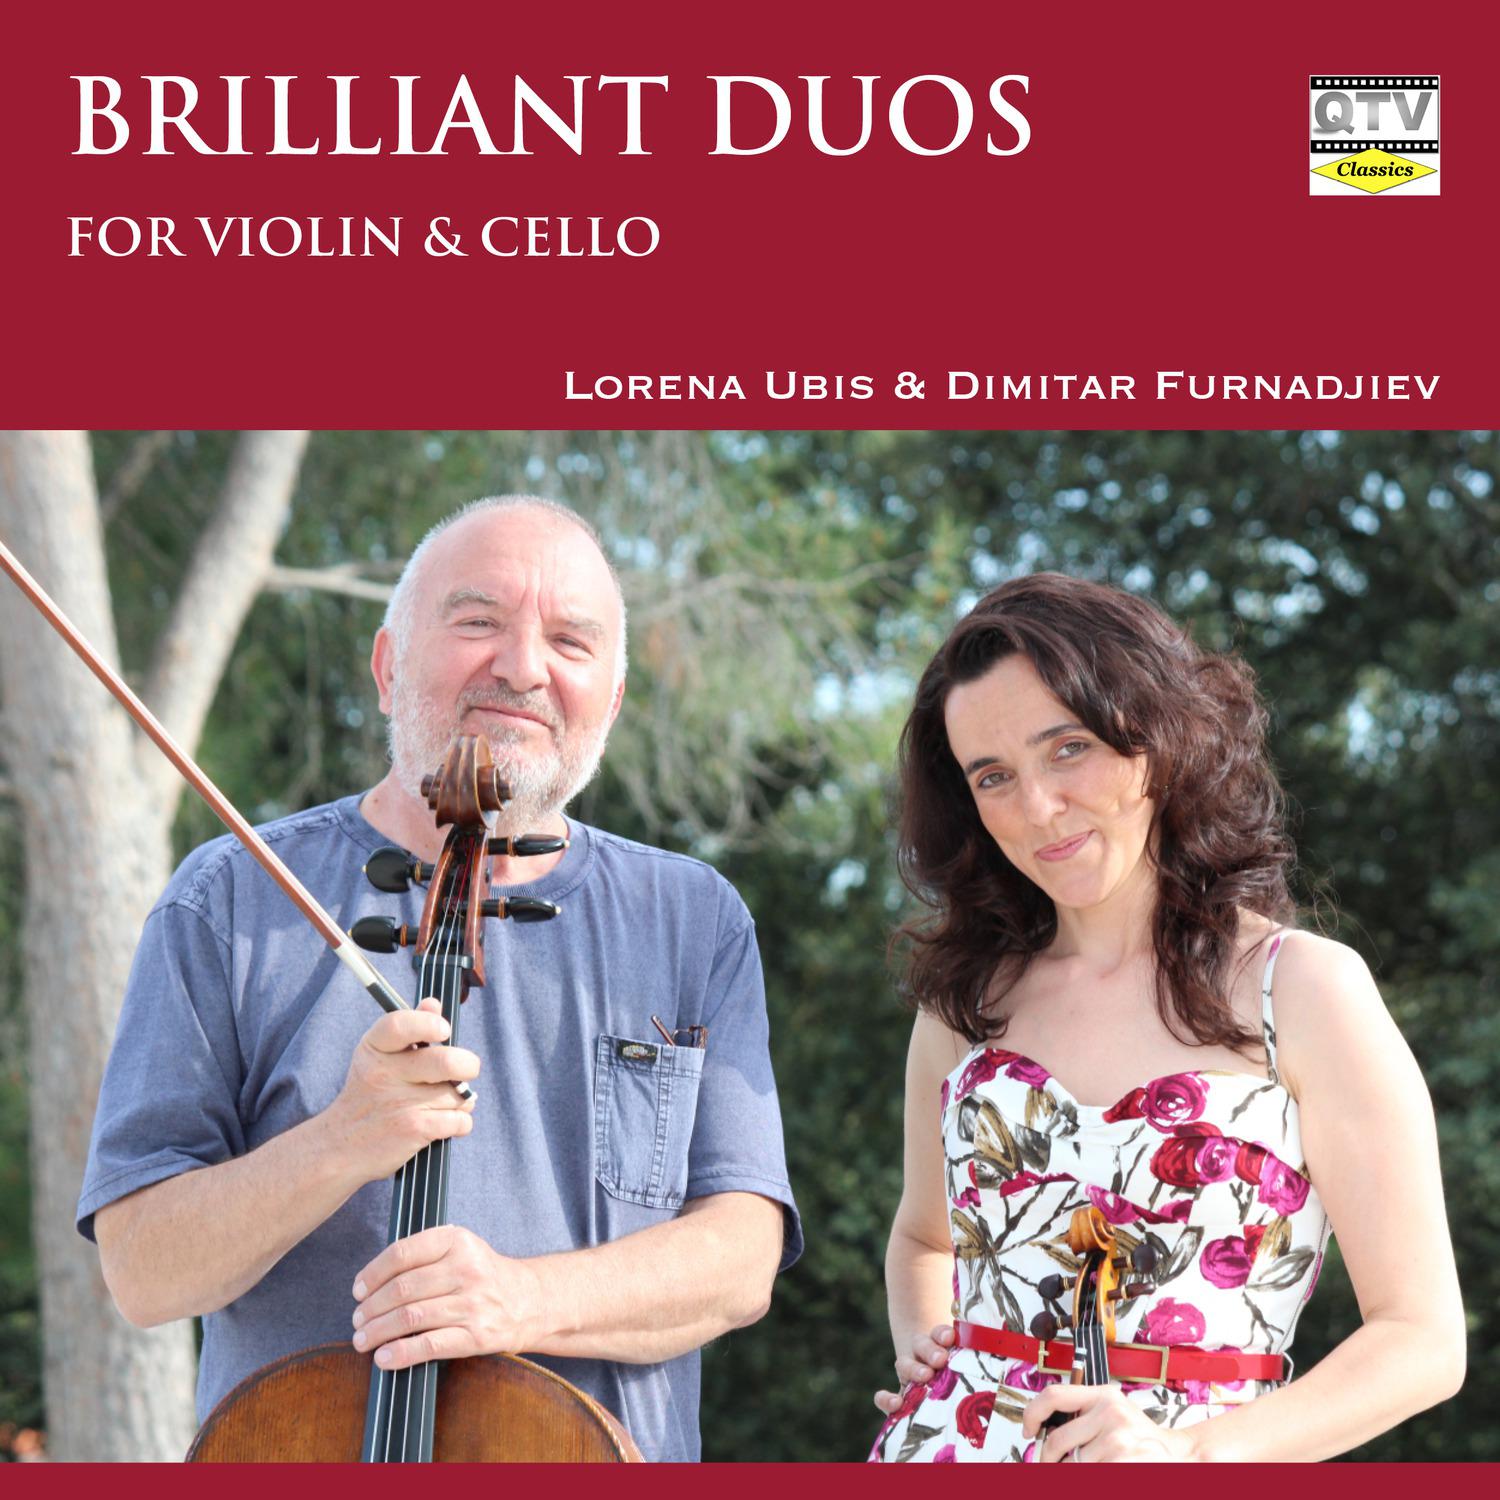 Grand Duo Brilliant for Violin and Cello, Op. 12: I. Allegro con fuoco